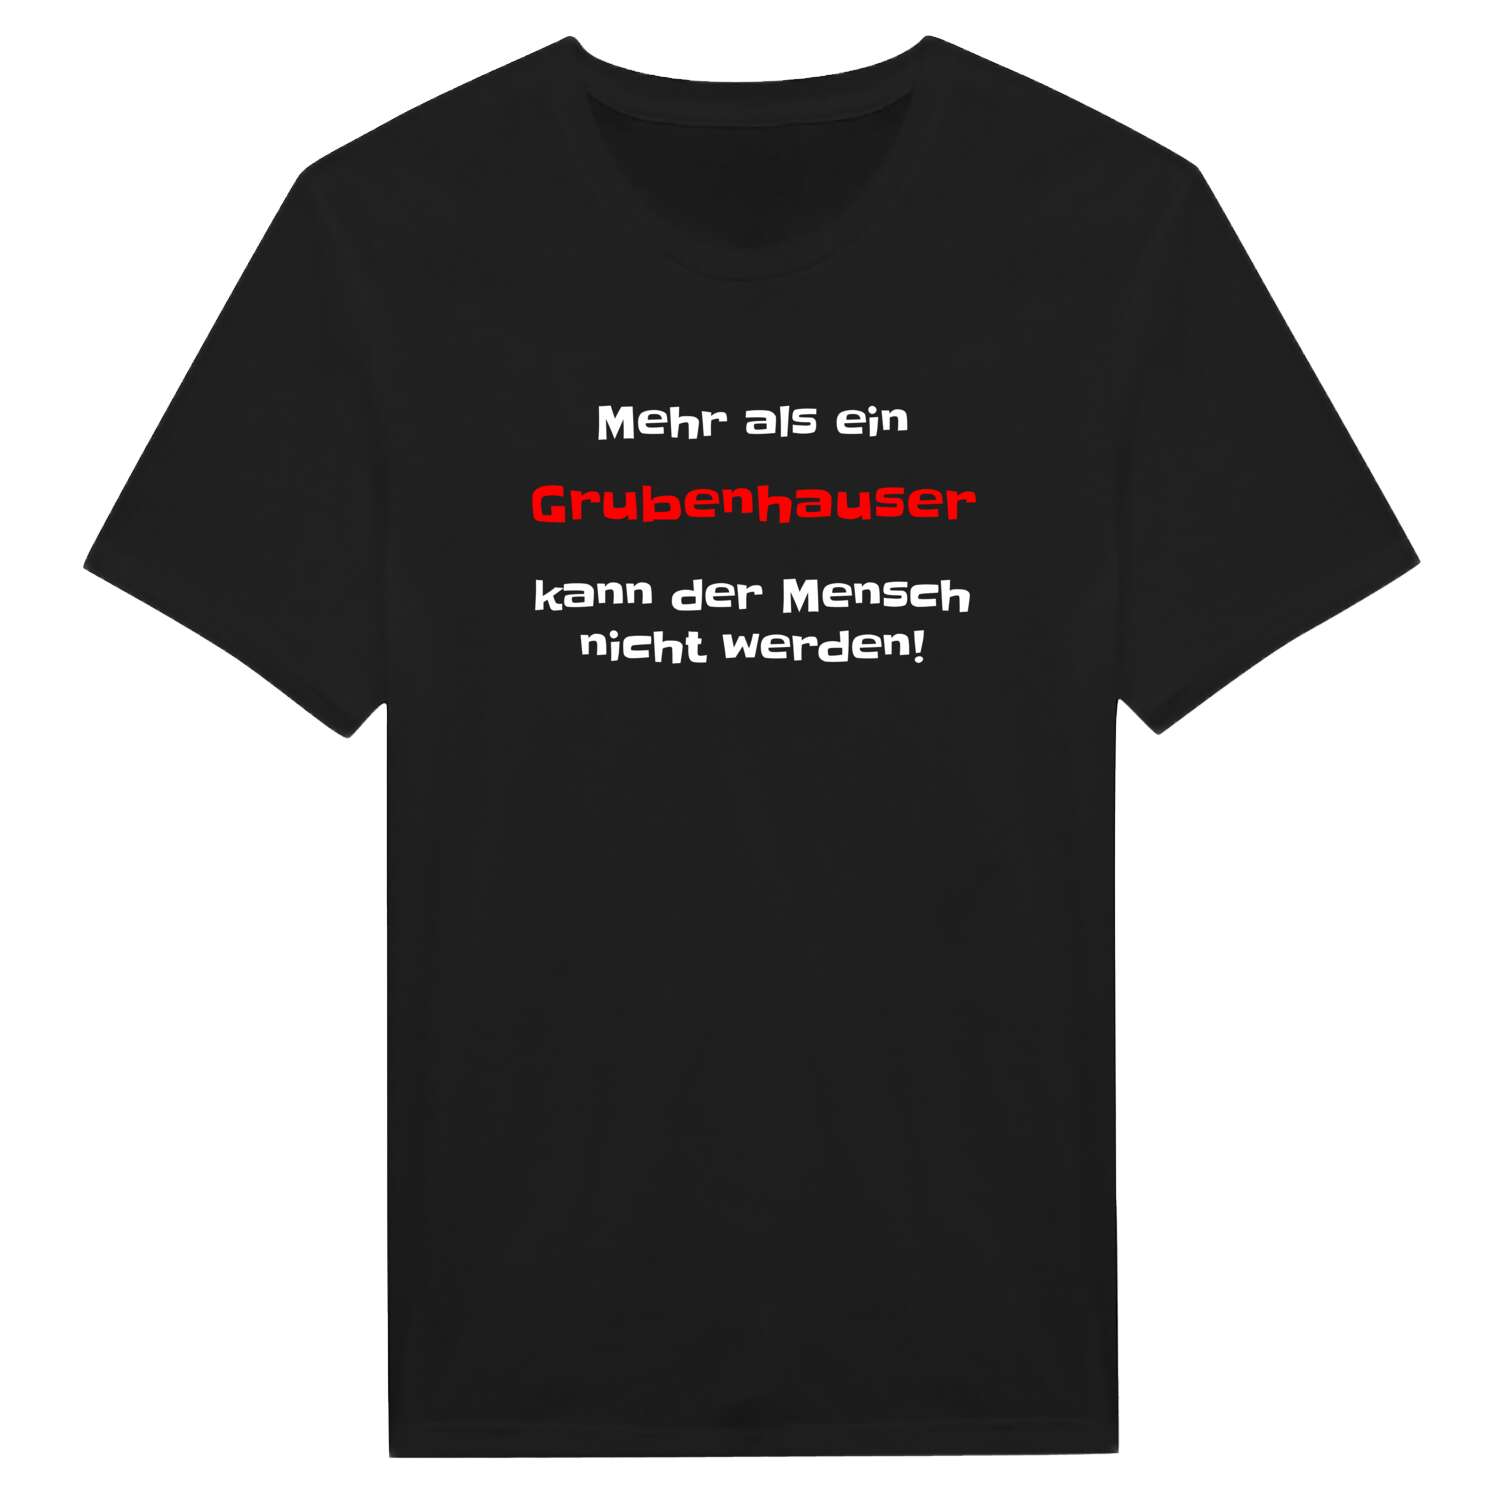 Grubenhaus T-Shirt »Mehr als ein«